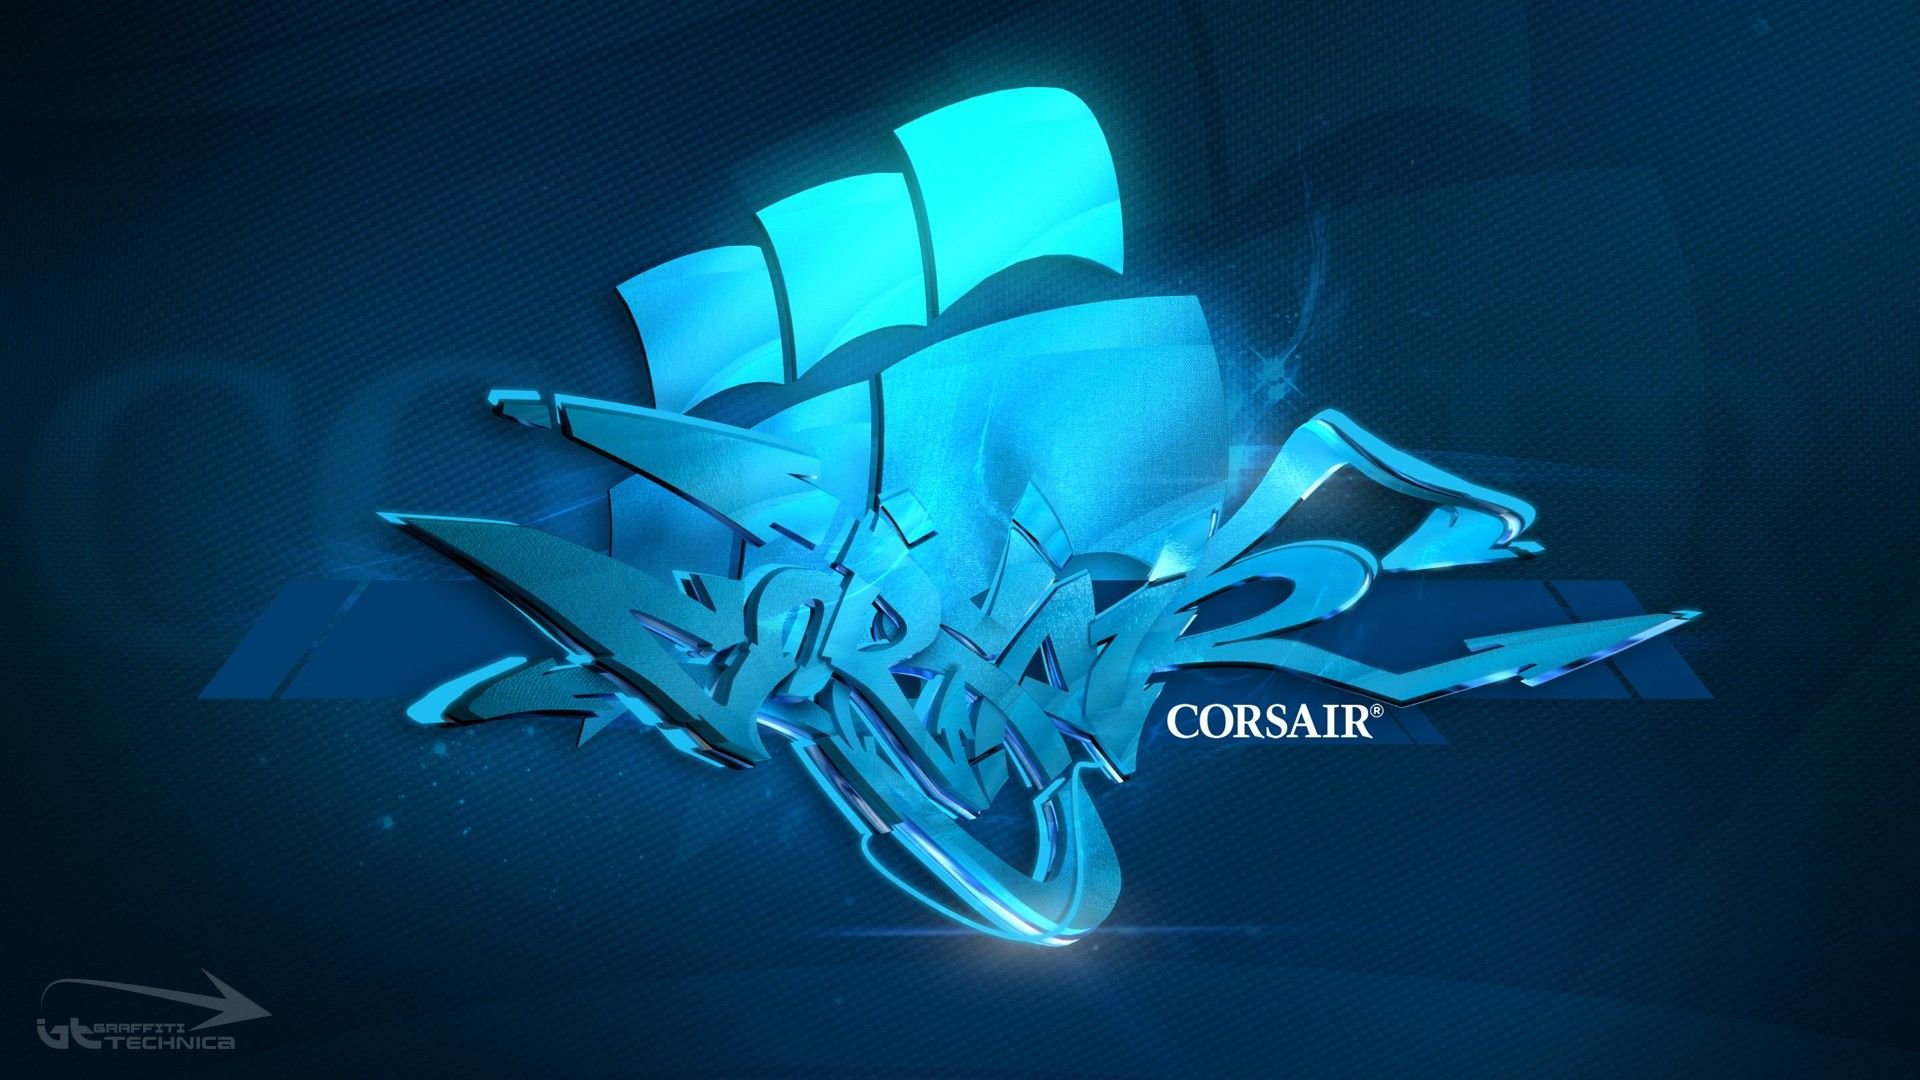 Corsair Gaming Puter Wallpaper